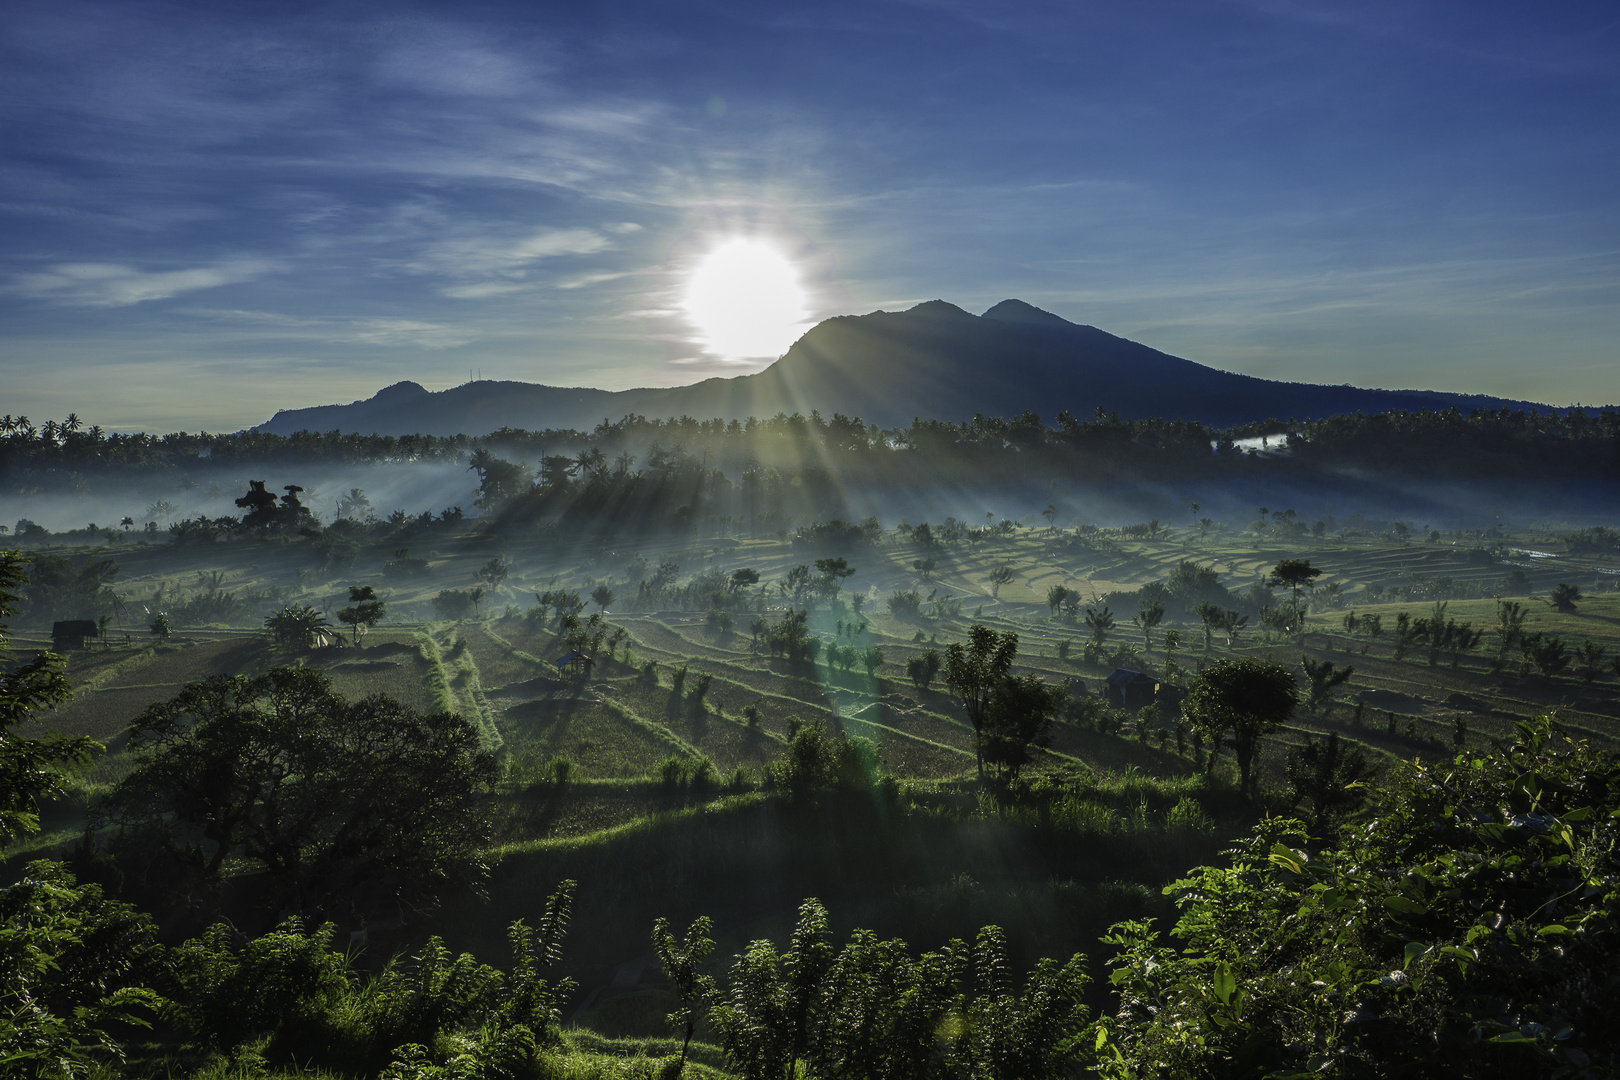 Awake on Mount Batur